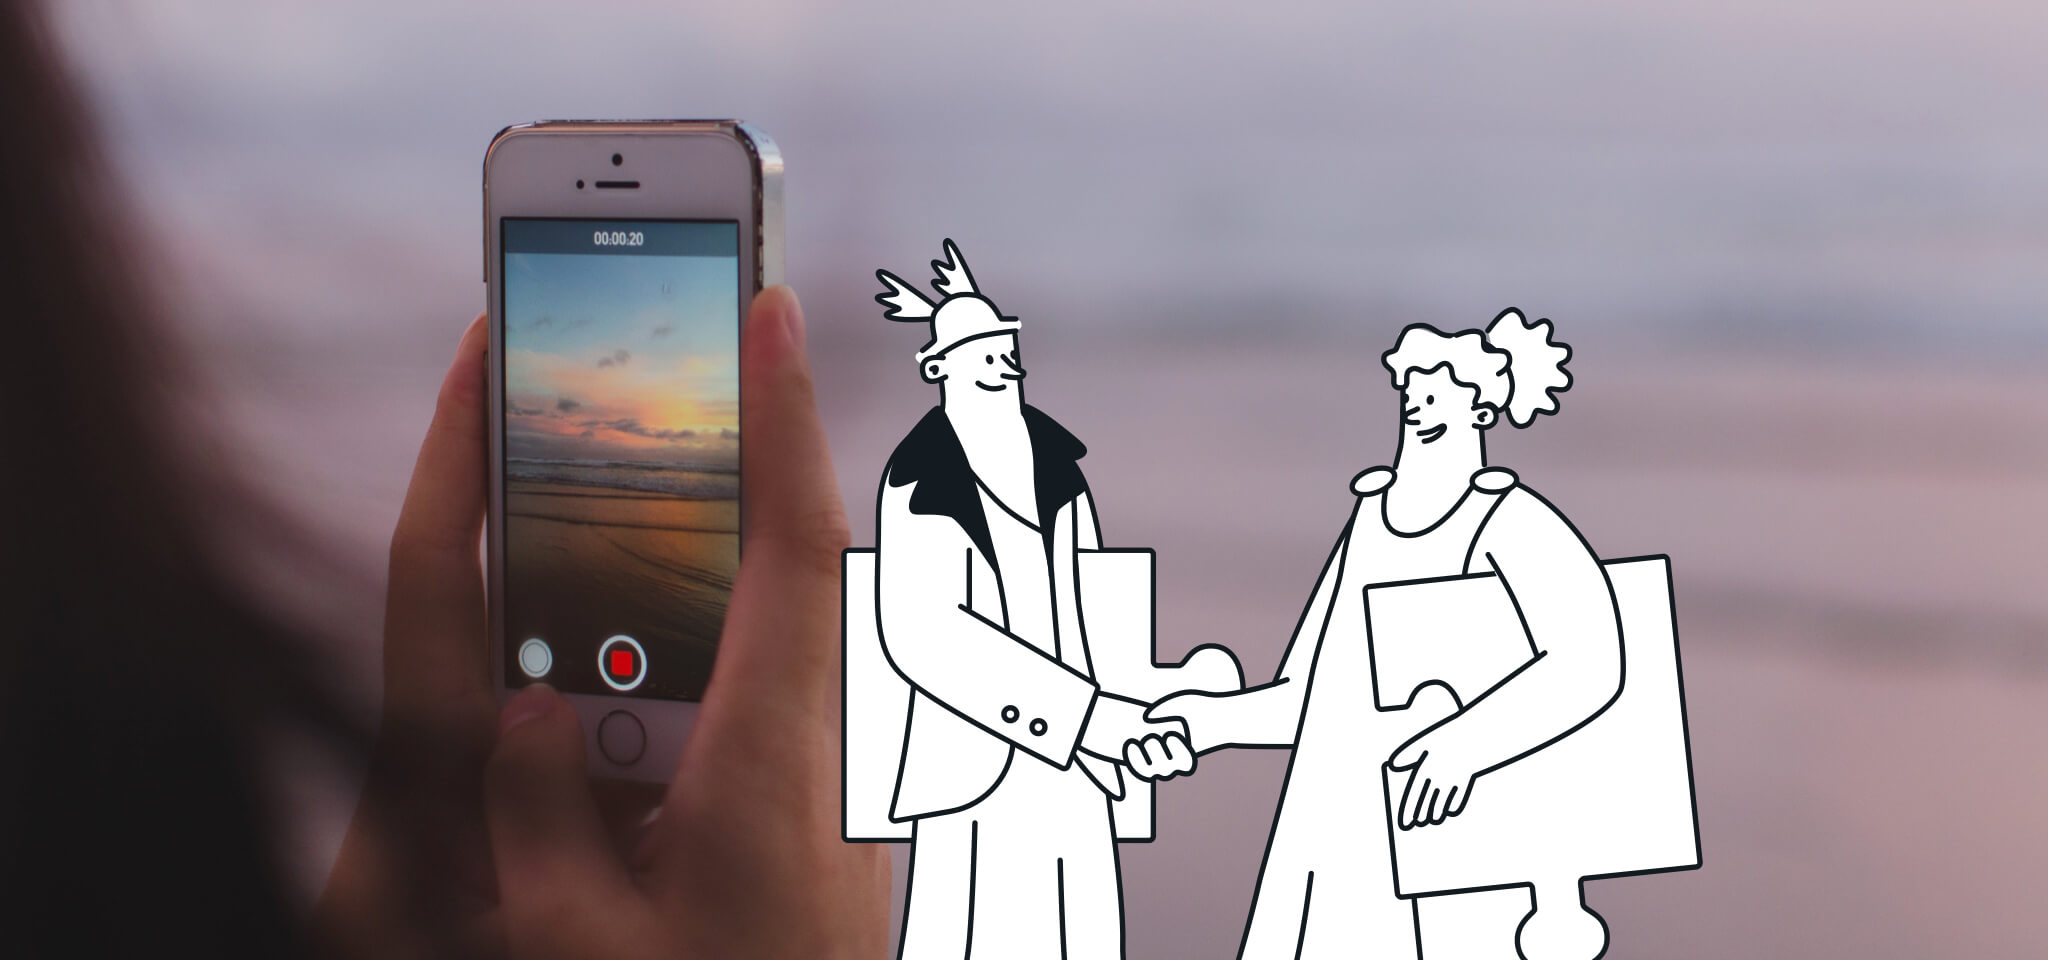 Hermes y una diosa llegan a un acuerdo delante de un móvil